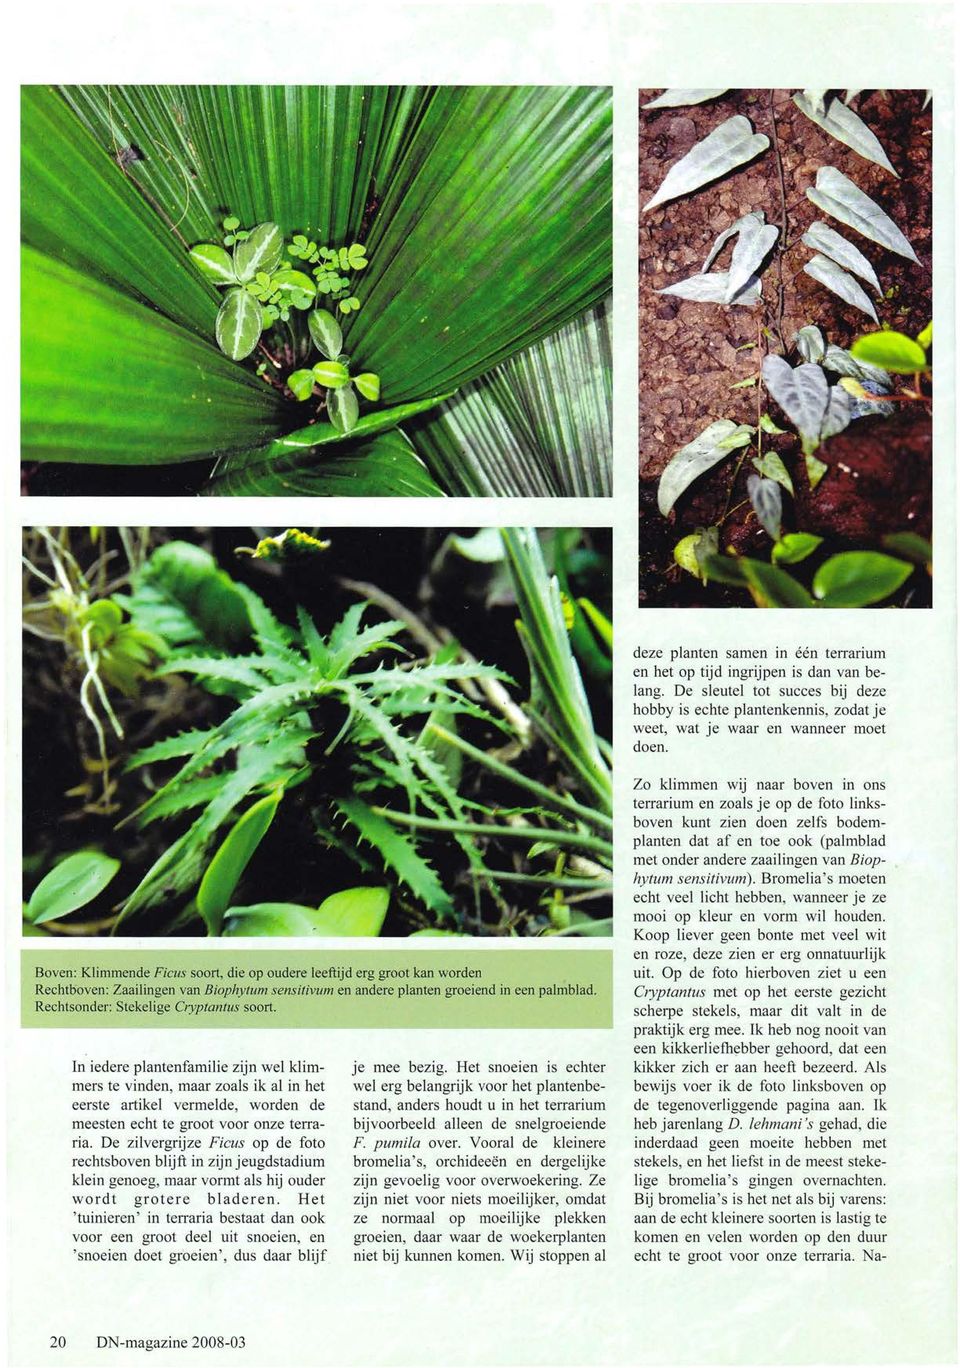 Rechtsonder: Stekelige Cryptantus soort. In iedere plantenfamilie zijn wel klimmers te vinden, maar zoals ik al in het eerste artikel vermelde, worden de meesten echt te groot voor onze terraria.